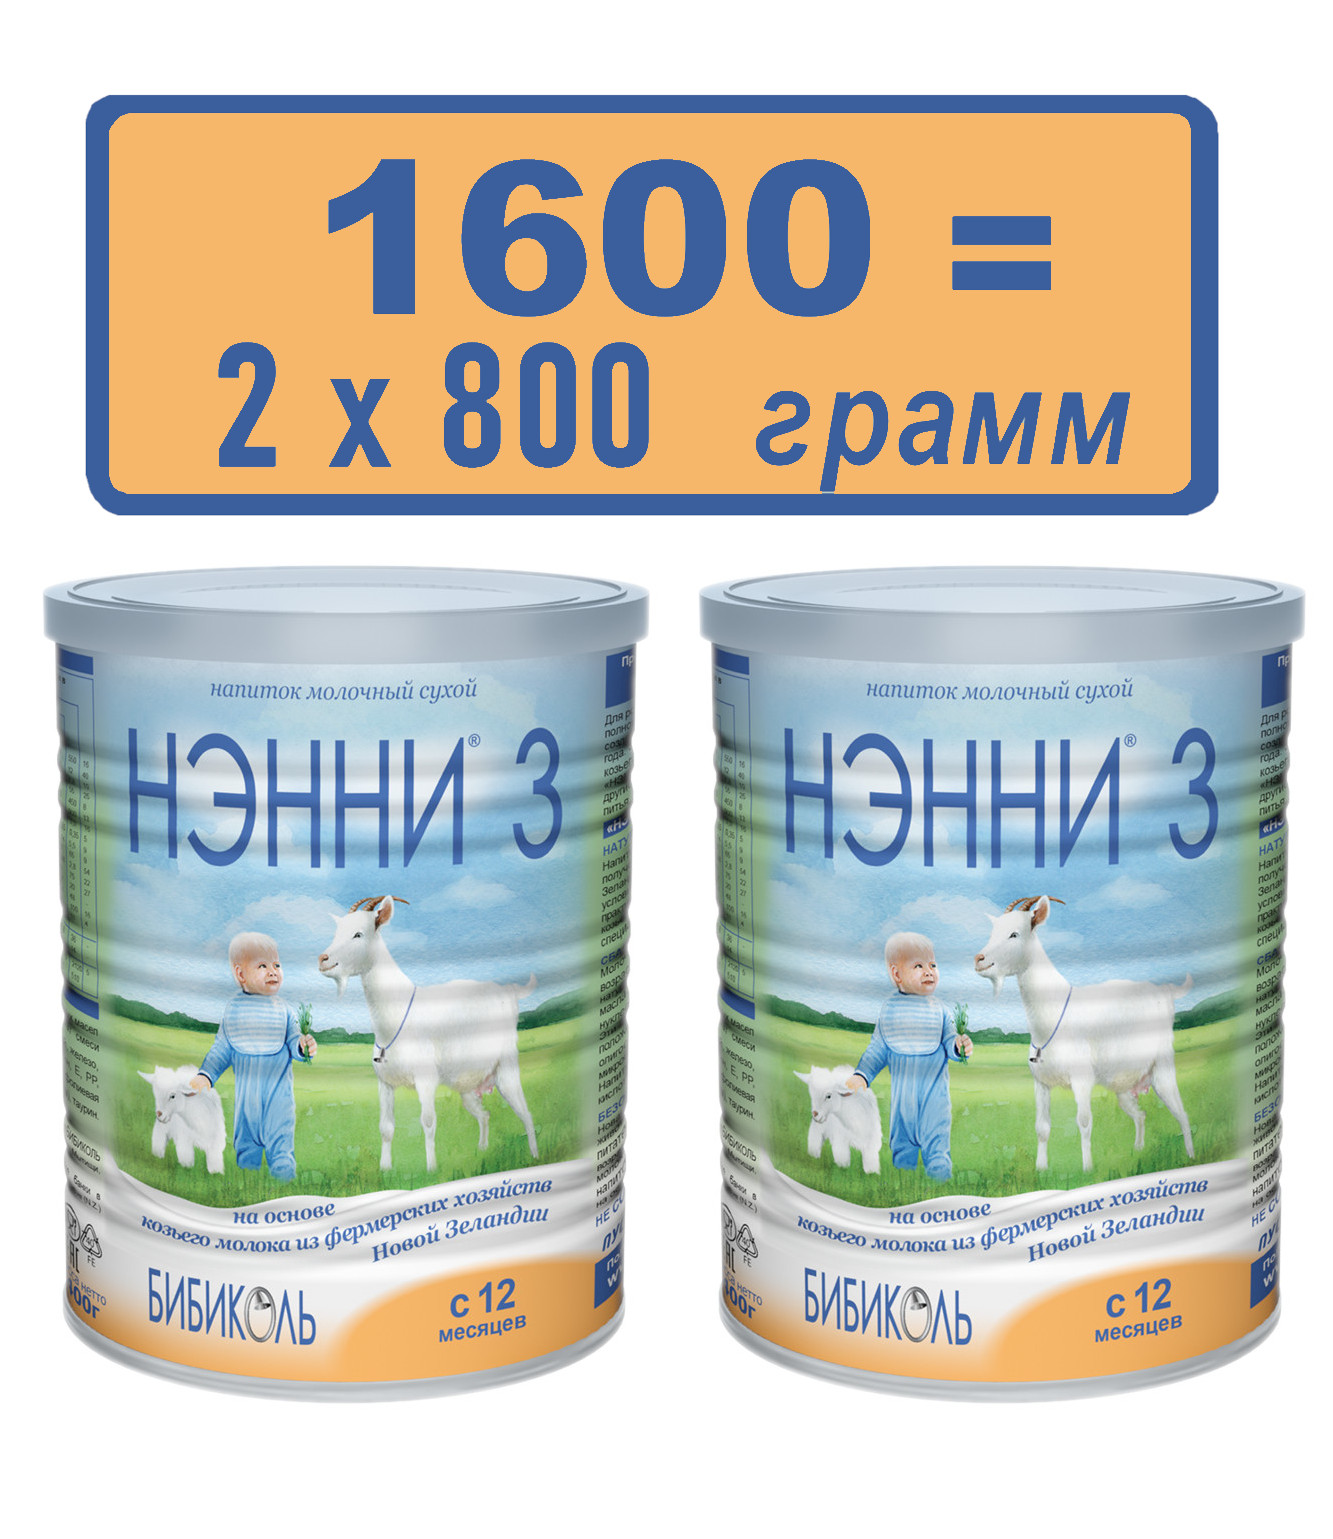 Сухой молочный напиток Бибиколь Нэнни 3, 2х800 гр